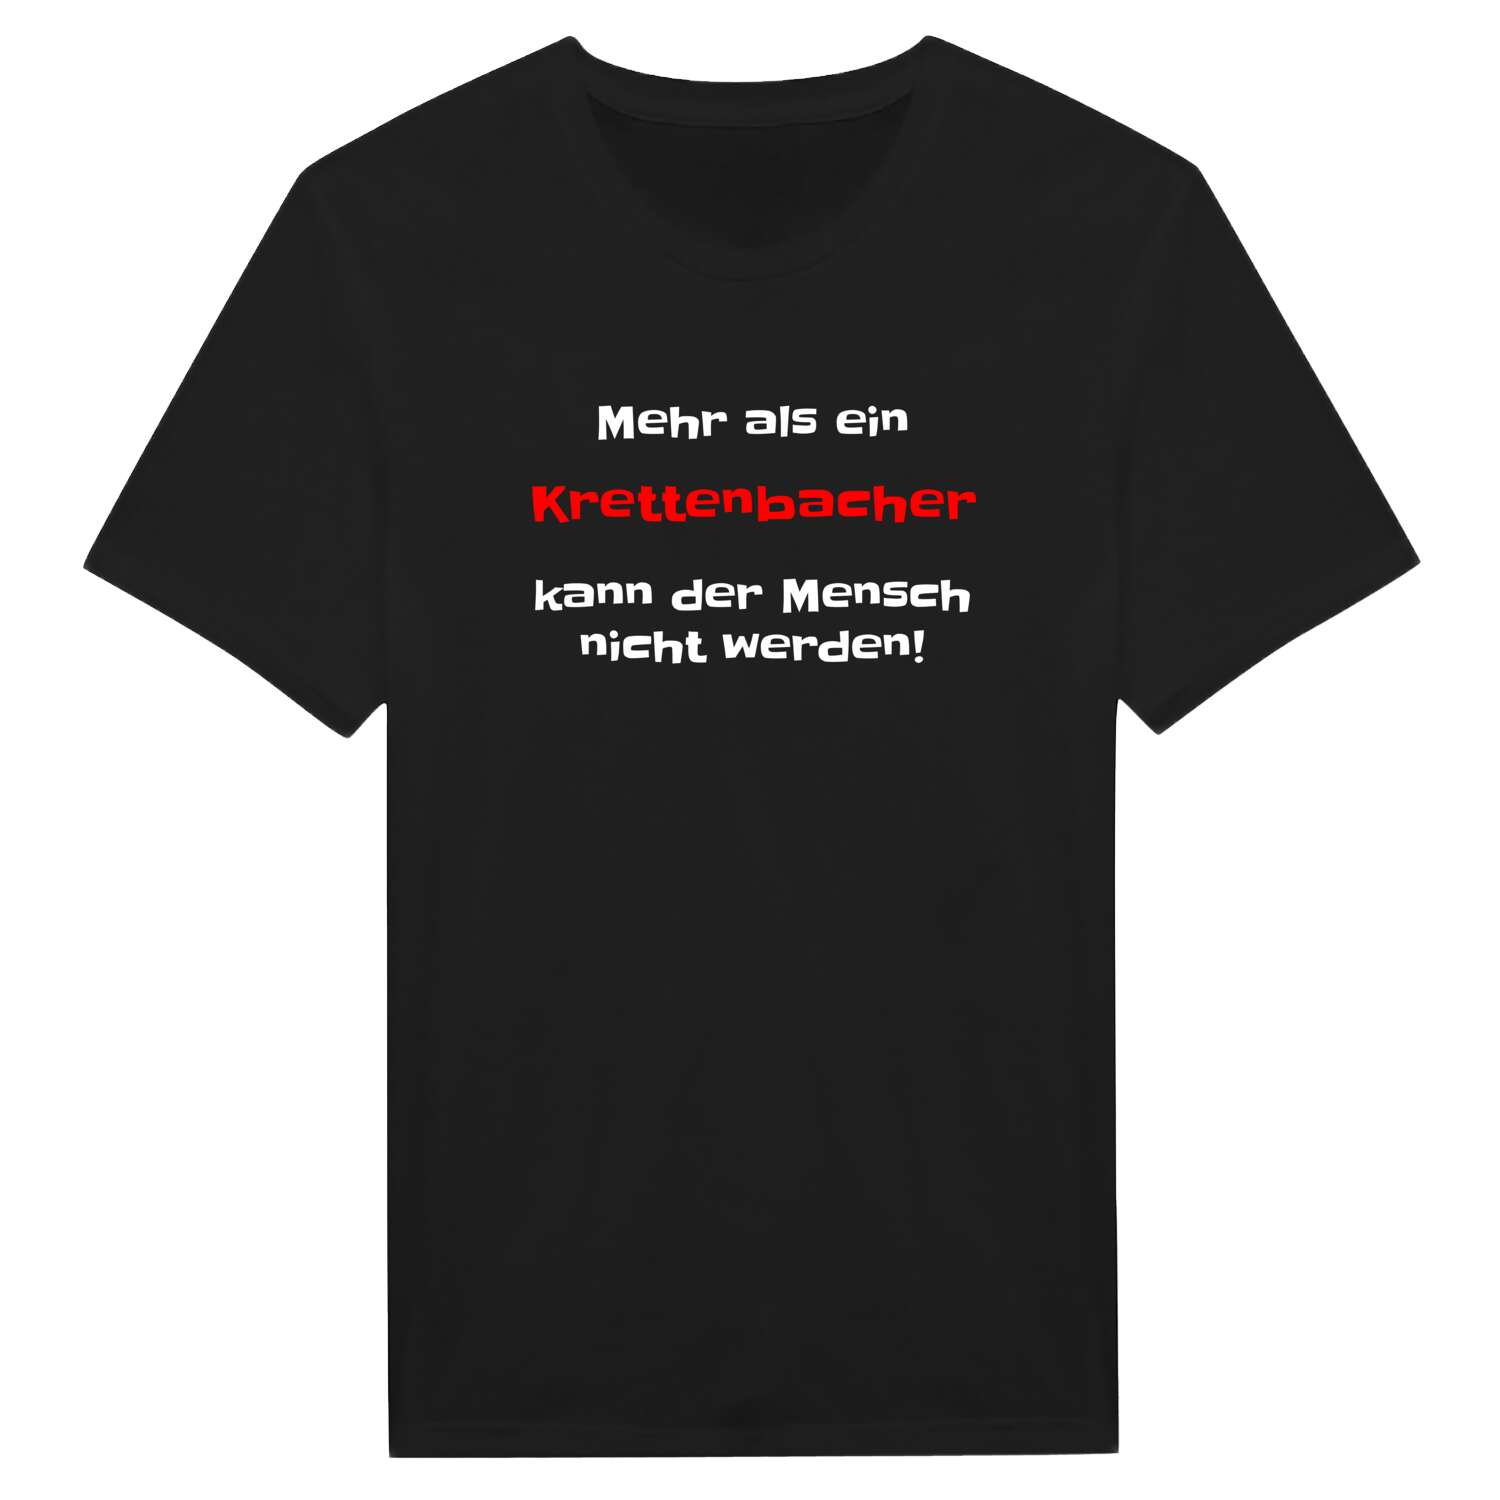 Krettenbach T-Shirt »Mehr als ein«